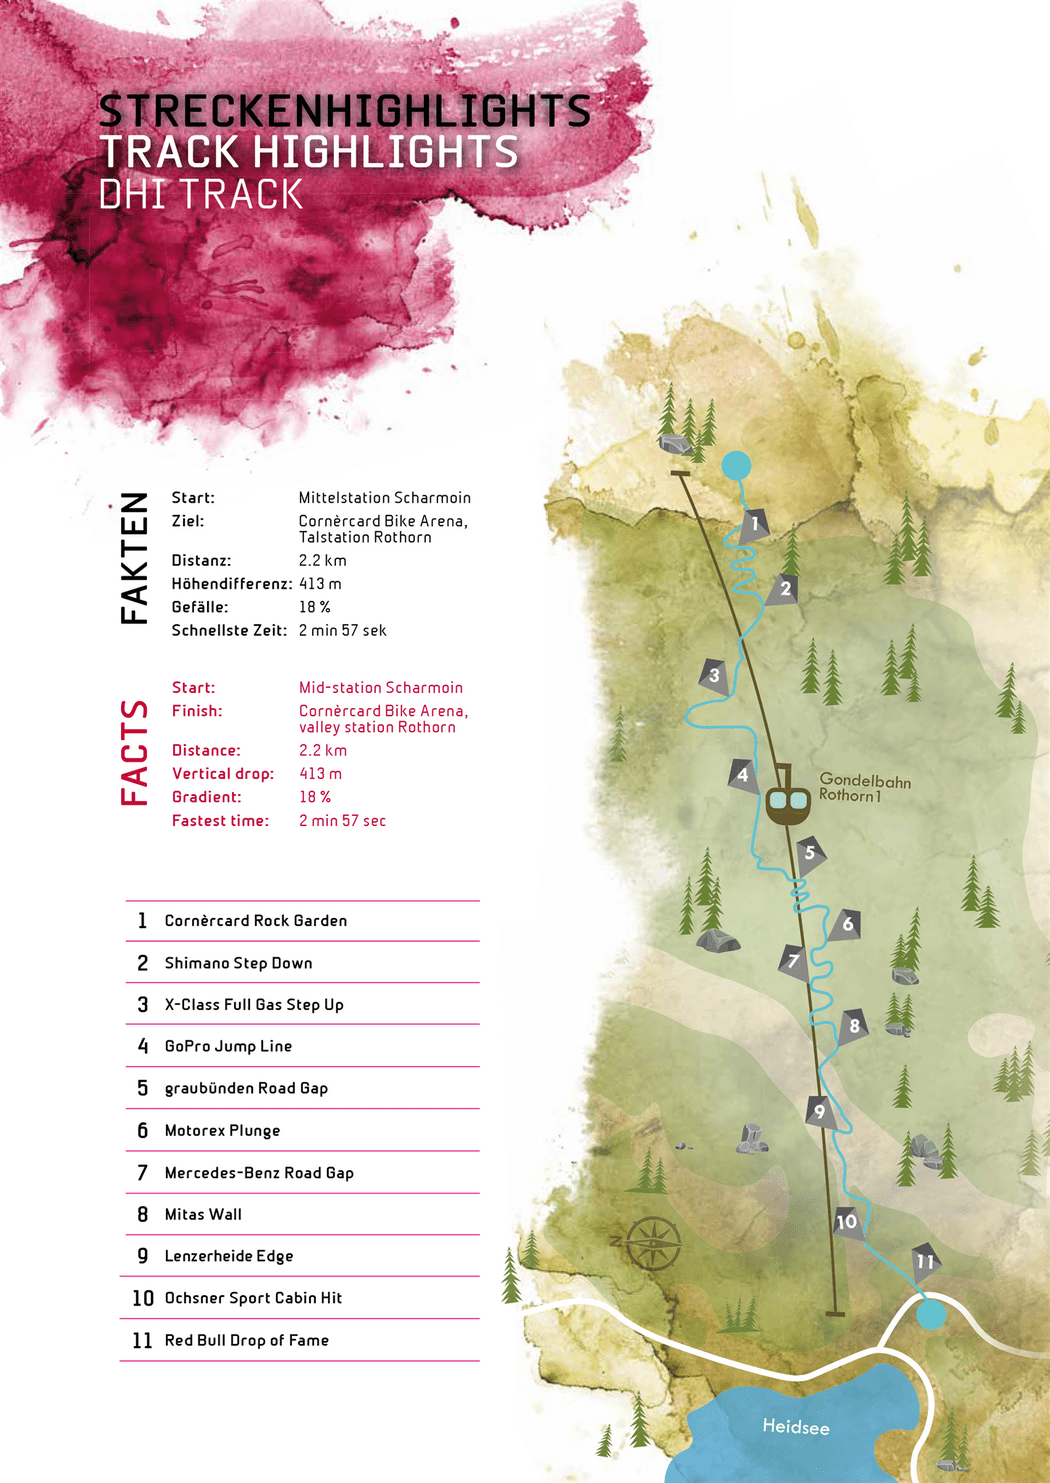 The Tracks for the World Championships in Lenzerheide